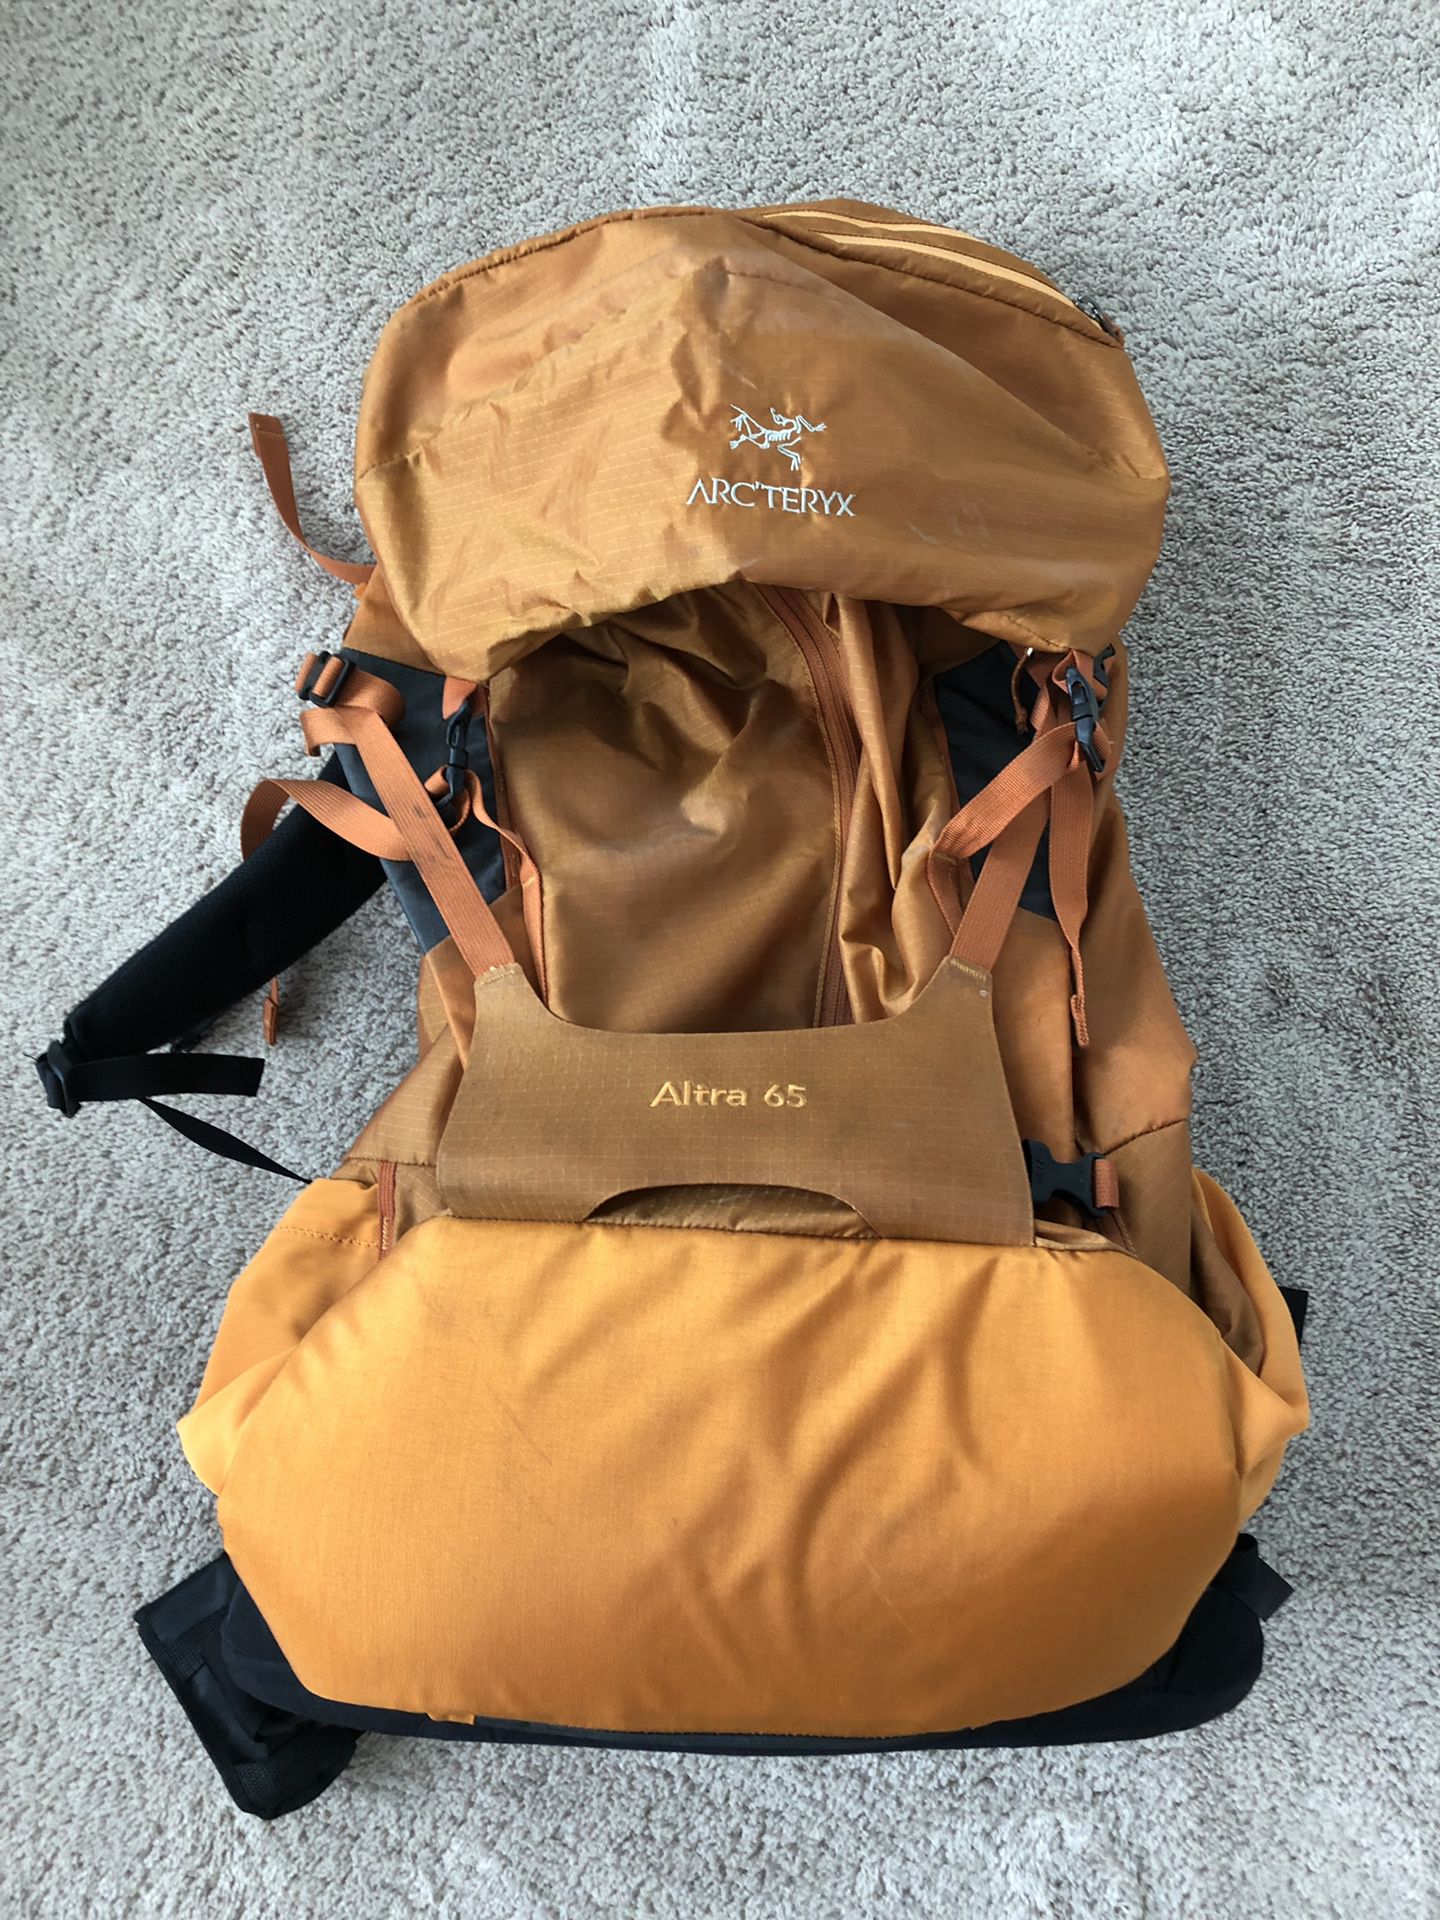 Arc’teryx Altra 65 hiking backpack